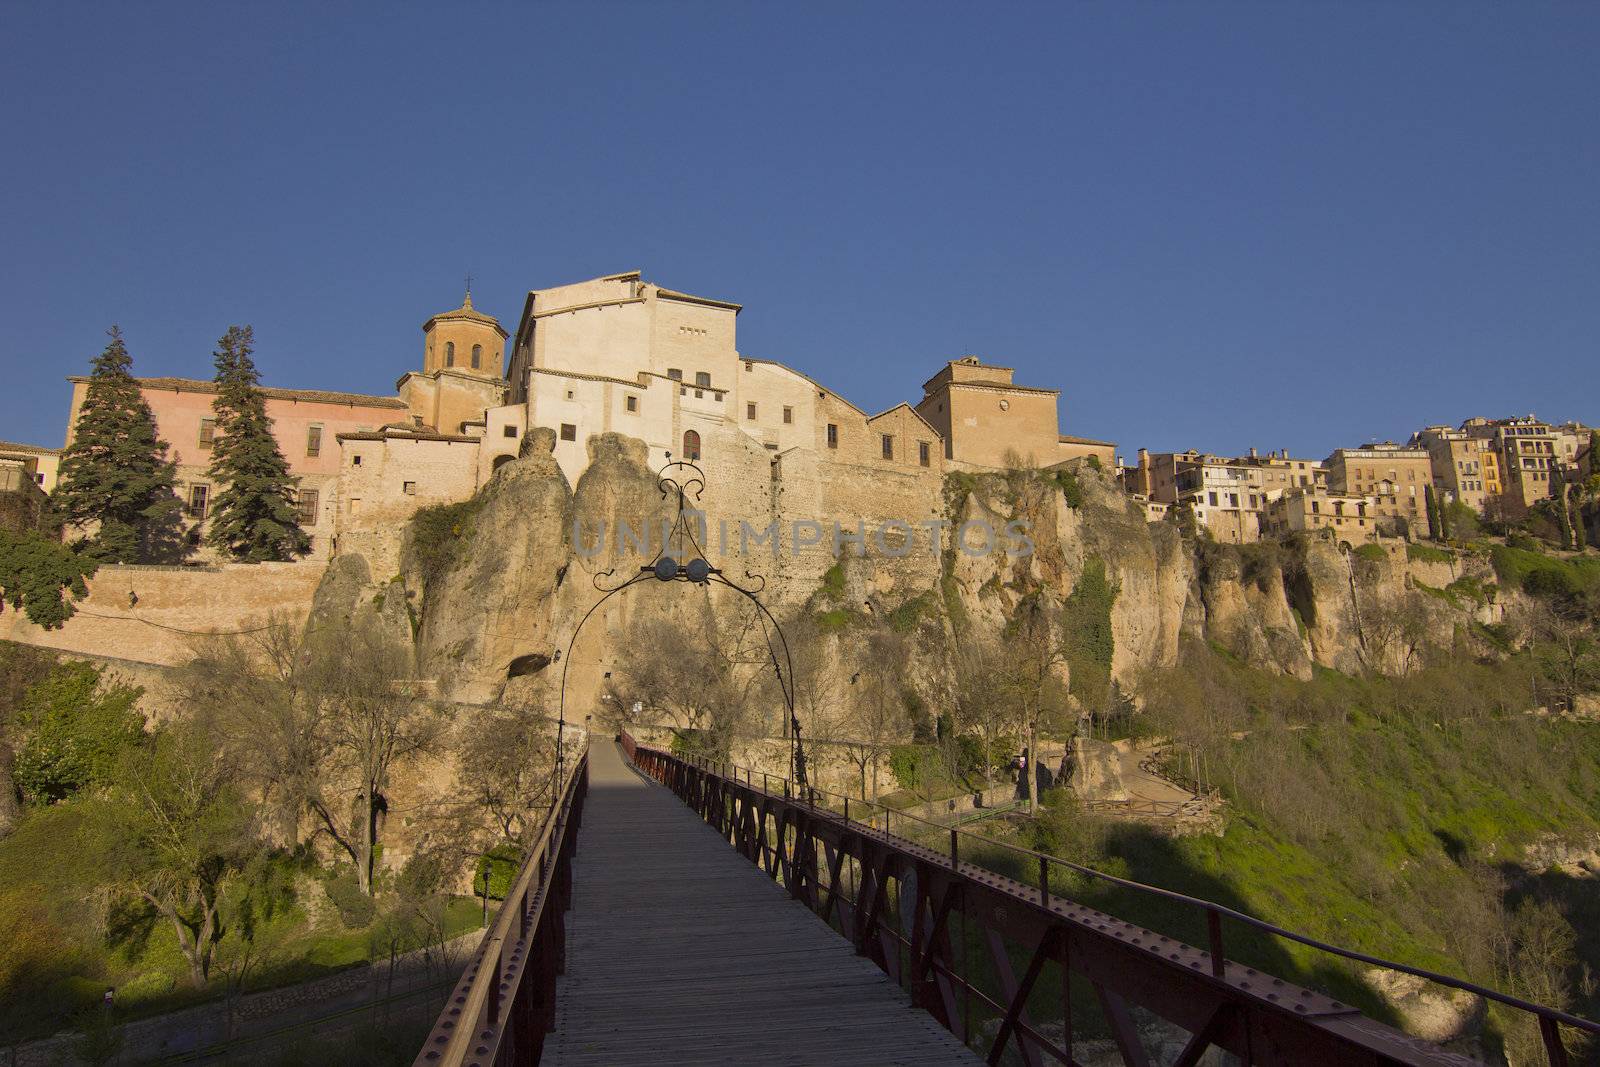 The medieval town of Cuenca, Spain by dannyus